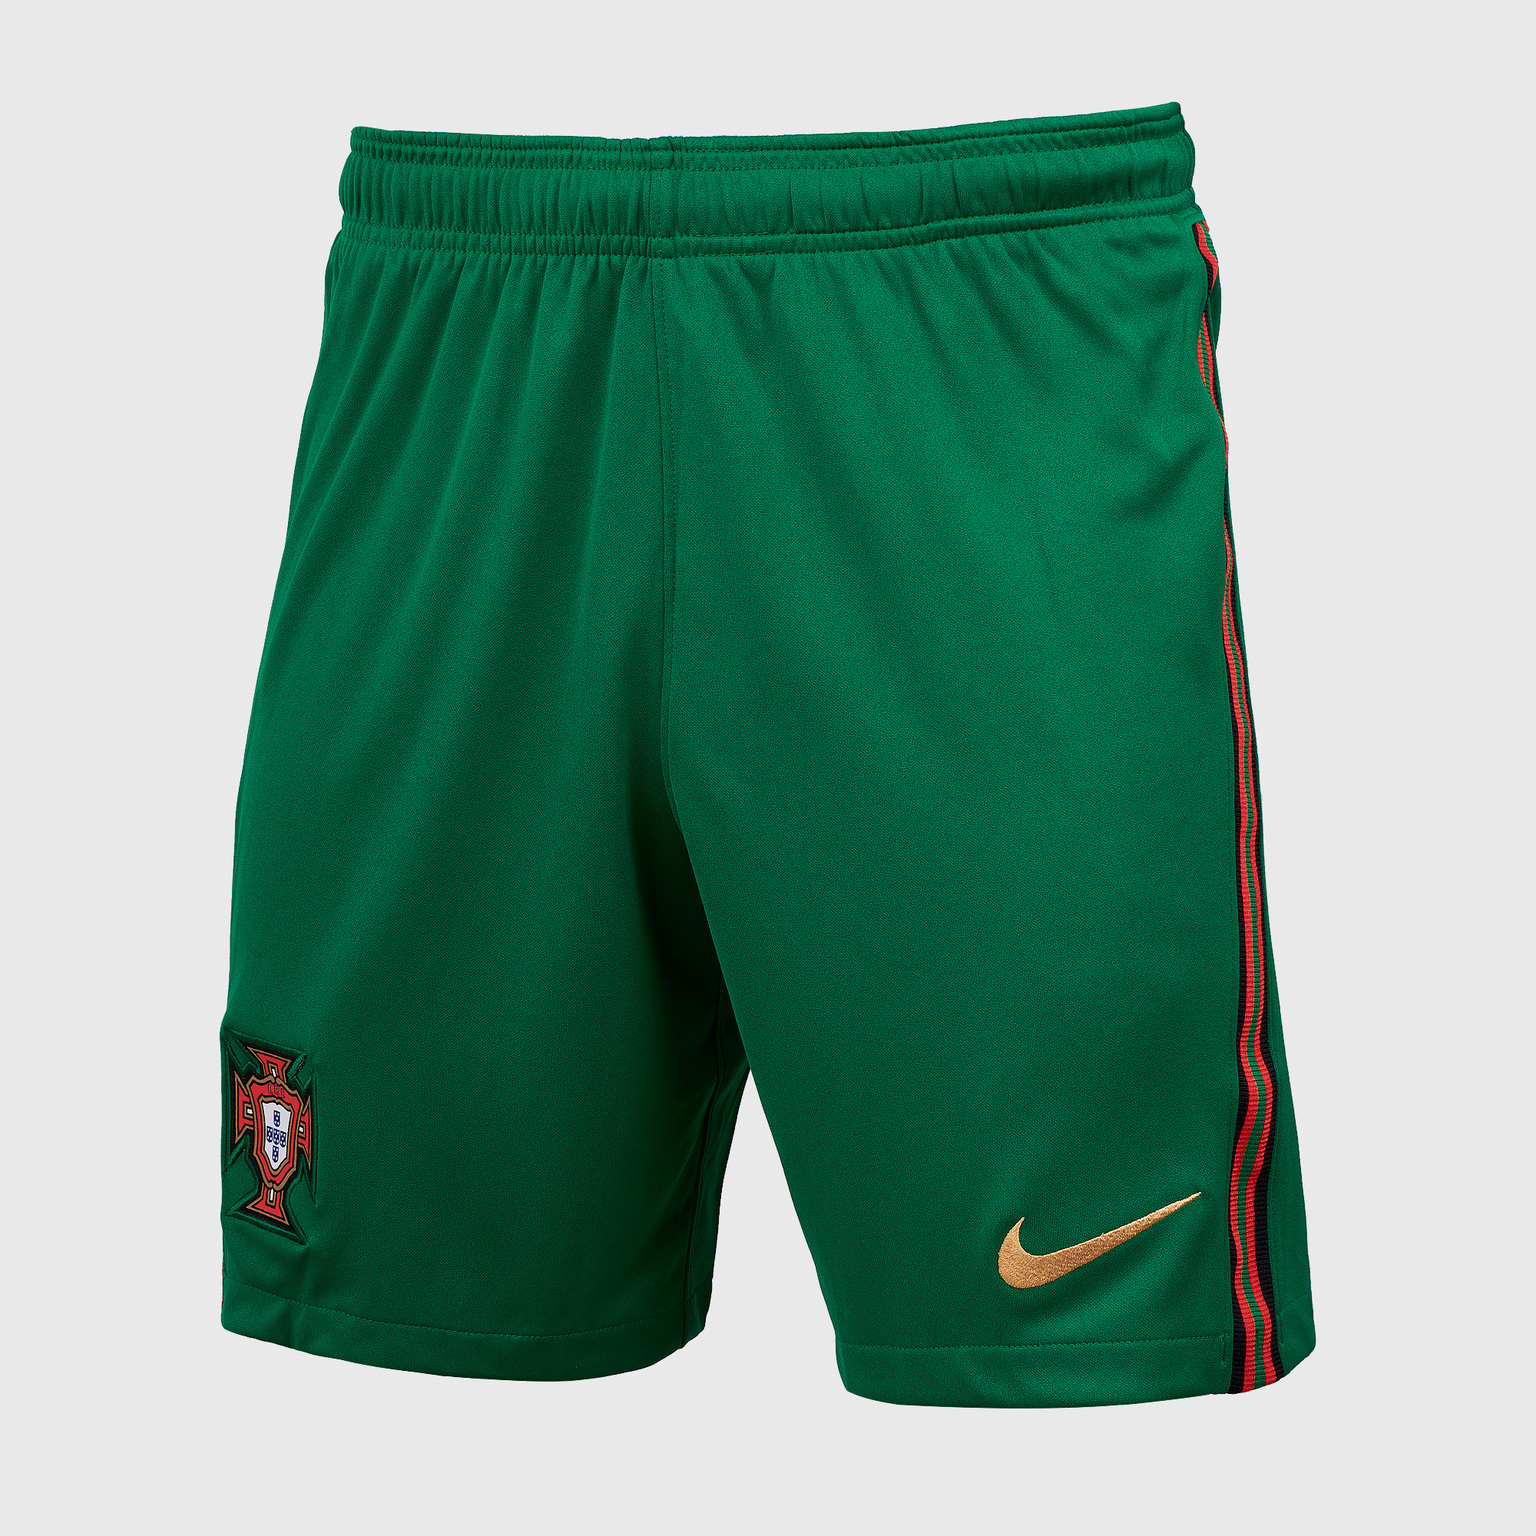 Шорты игровые домашние Nike сборной Португалии сезон 2020/21